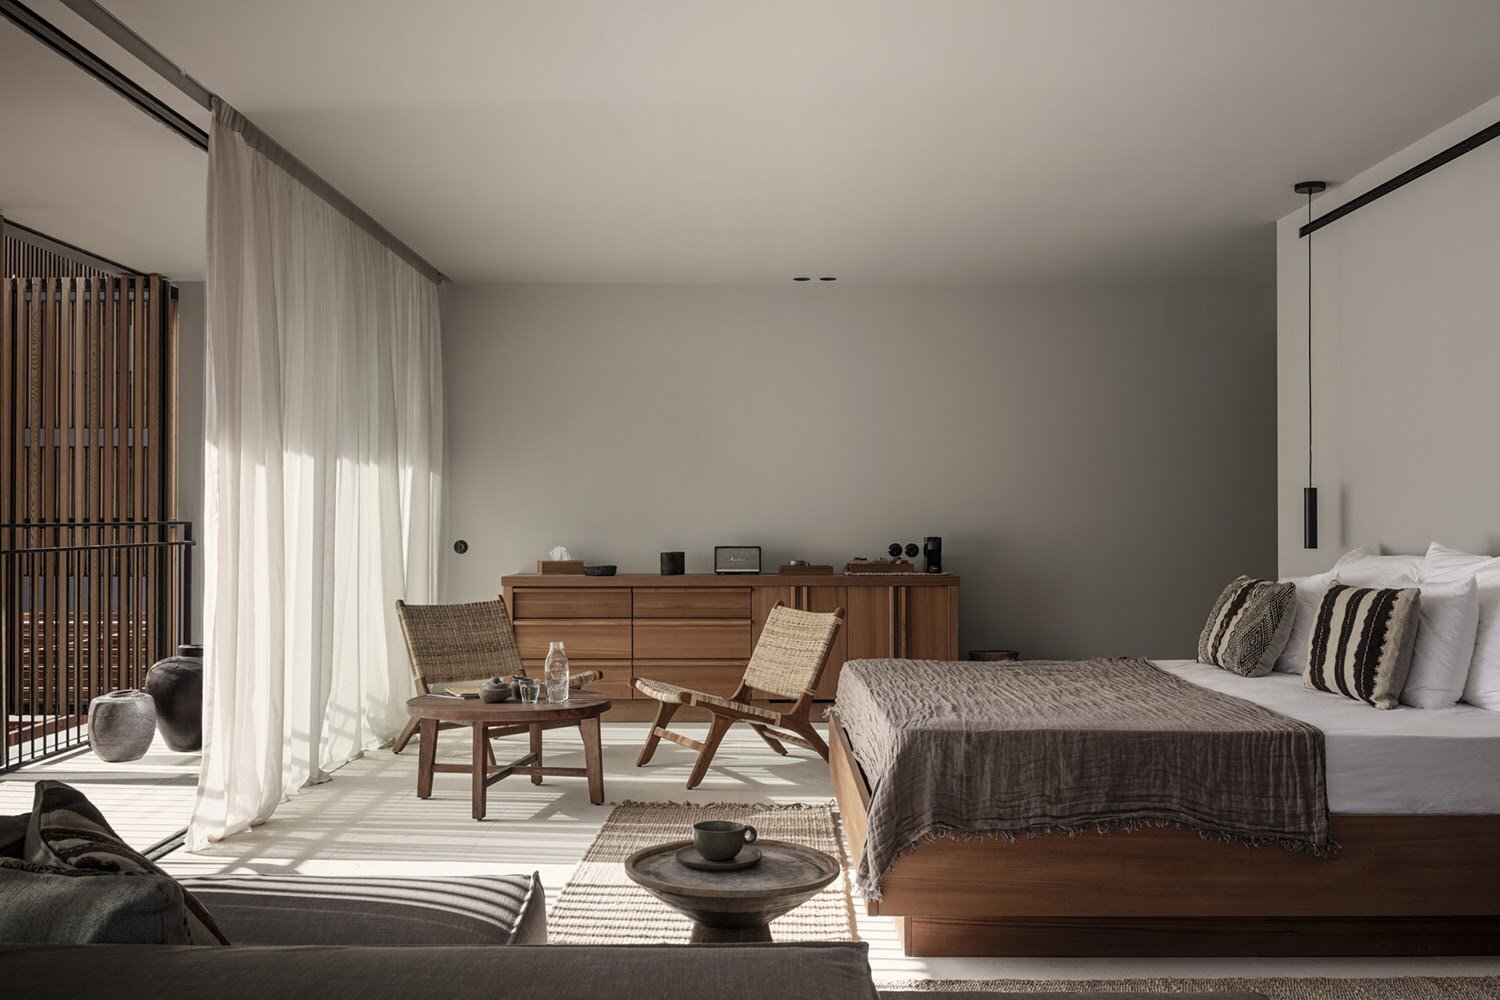 OKU suite con mobiliario en tonos tierra, colcha de lino y juegos de luz